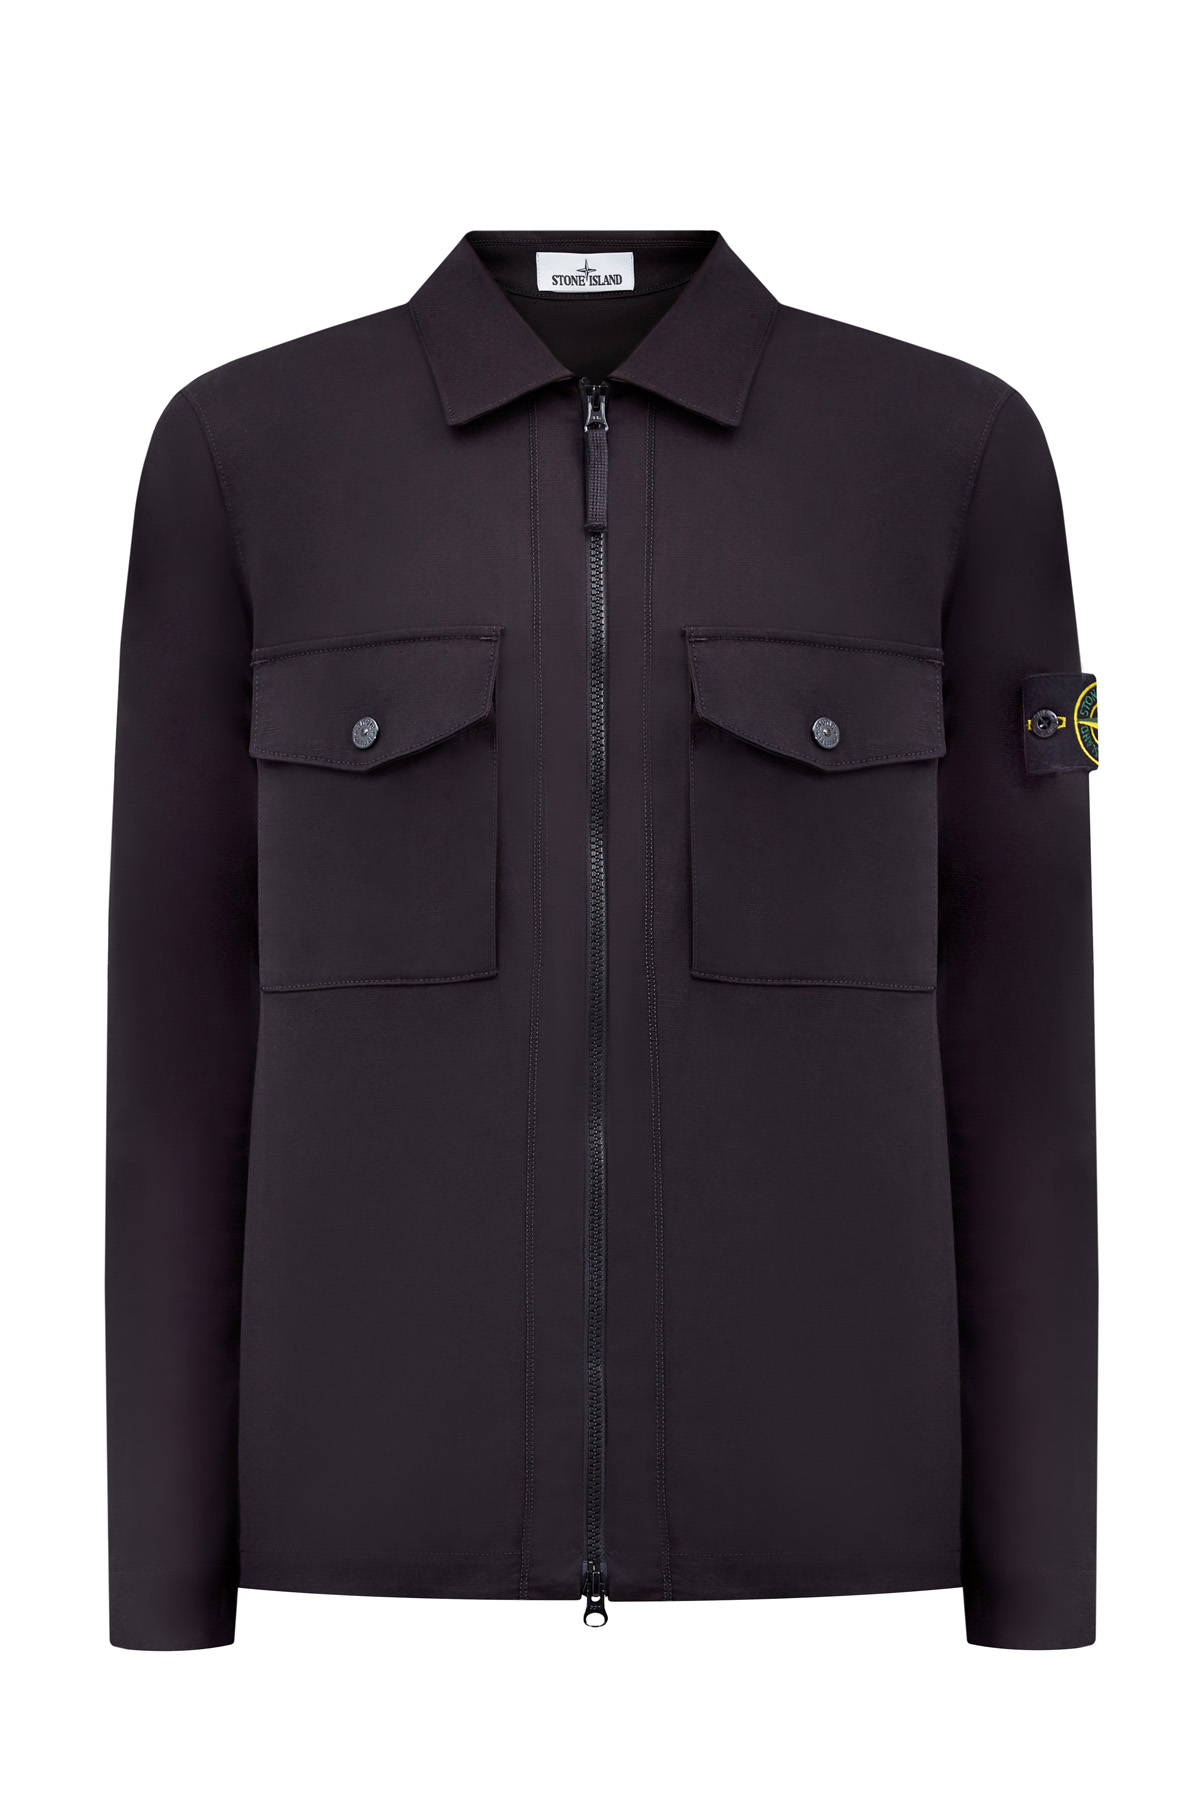 Хлопковая куртка-рубашка с накладными карманами на клапанах STONE ISLAND, цвет черный, размер M;XL;S - фото 1